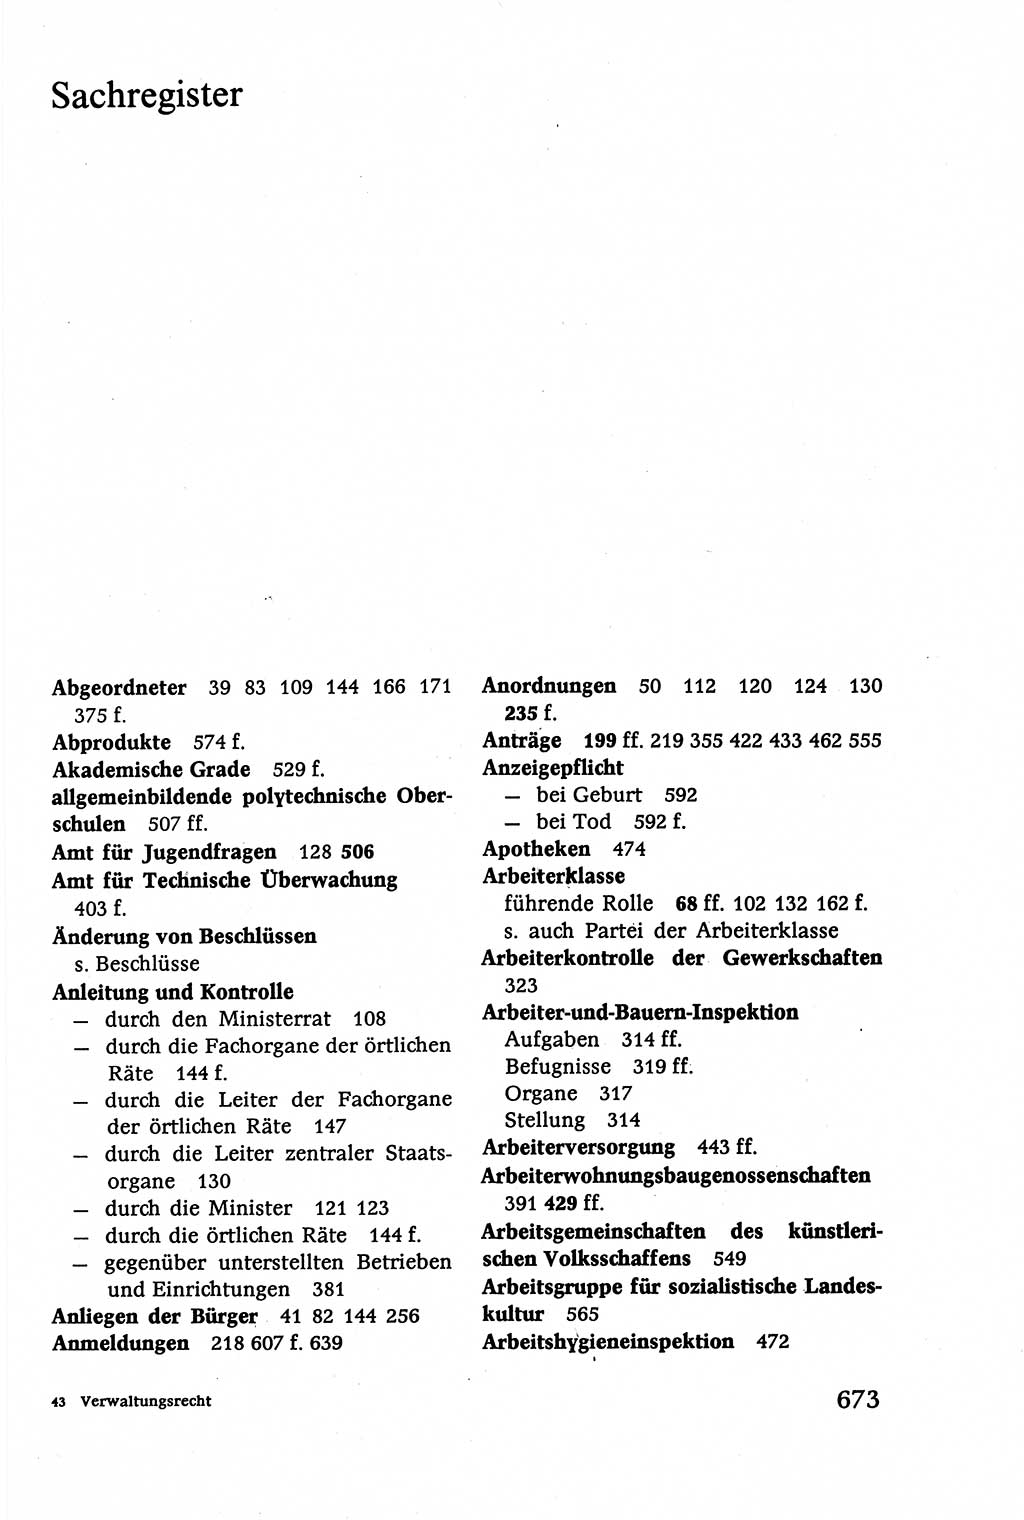 Verwaltungsrecht [Deutsche Demokratische Republik (DDR)], Lehrbuch 1979, Seite 673 (Verw.-R. DDR Lb. 1979, S. 673)